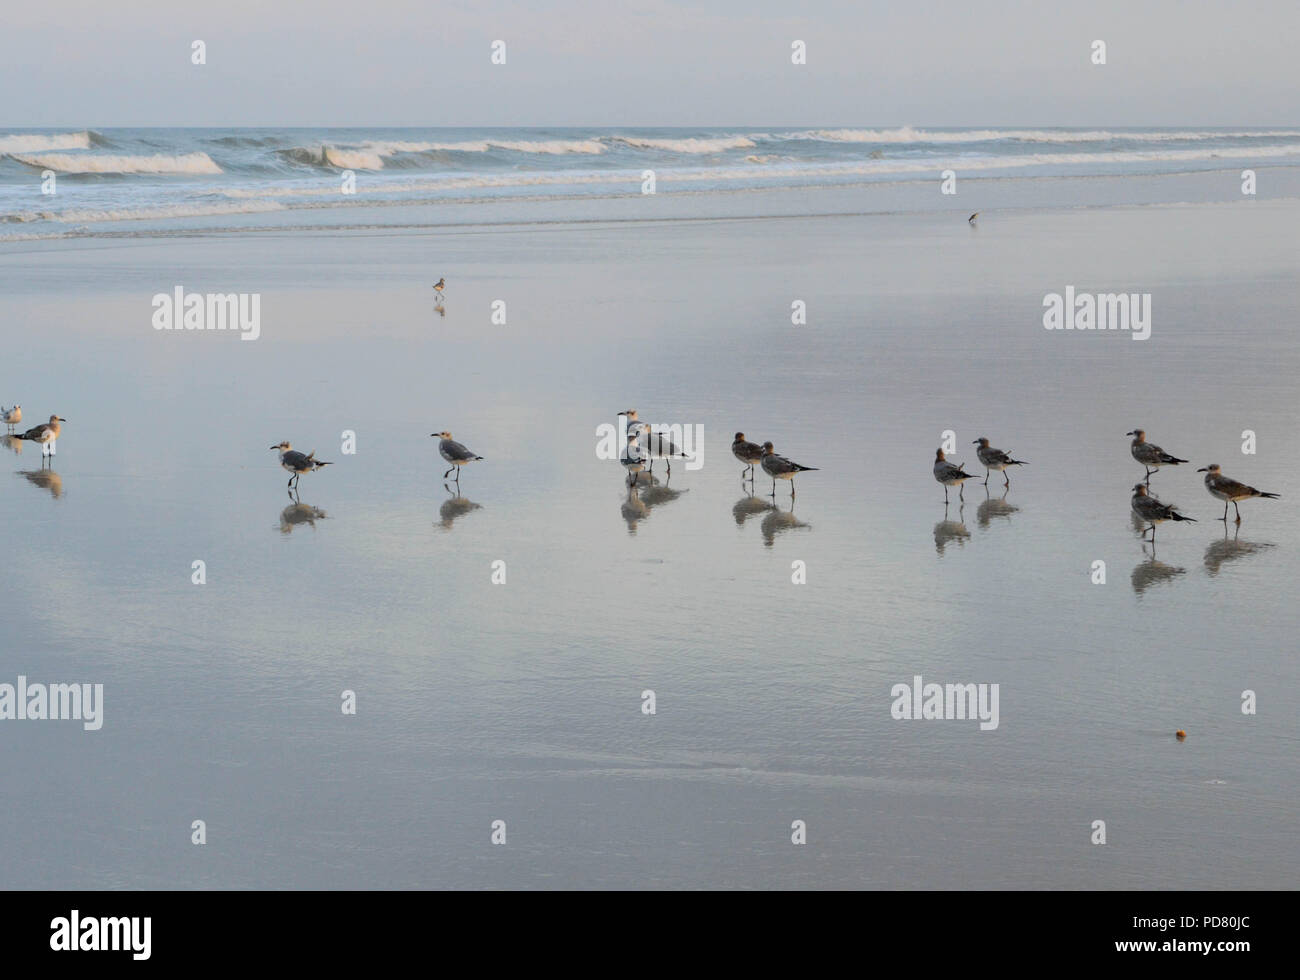 Sammeln von Vögeln auf erholsamen Strand mit Wellen im Hintergrund. Stockfoto